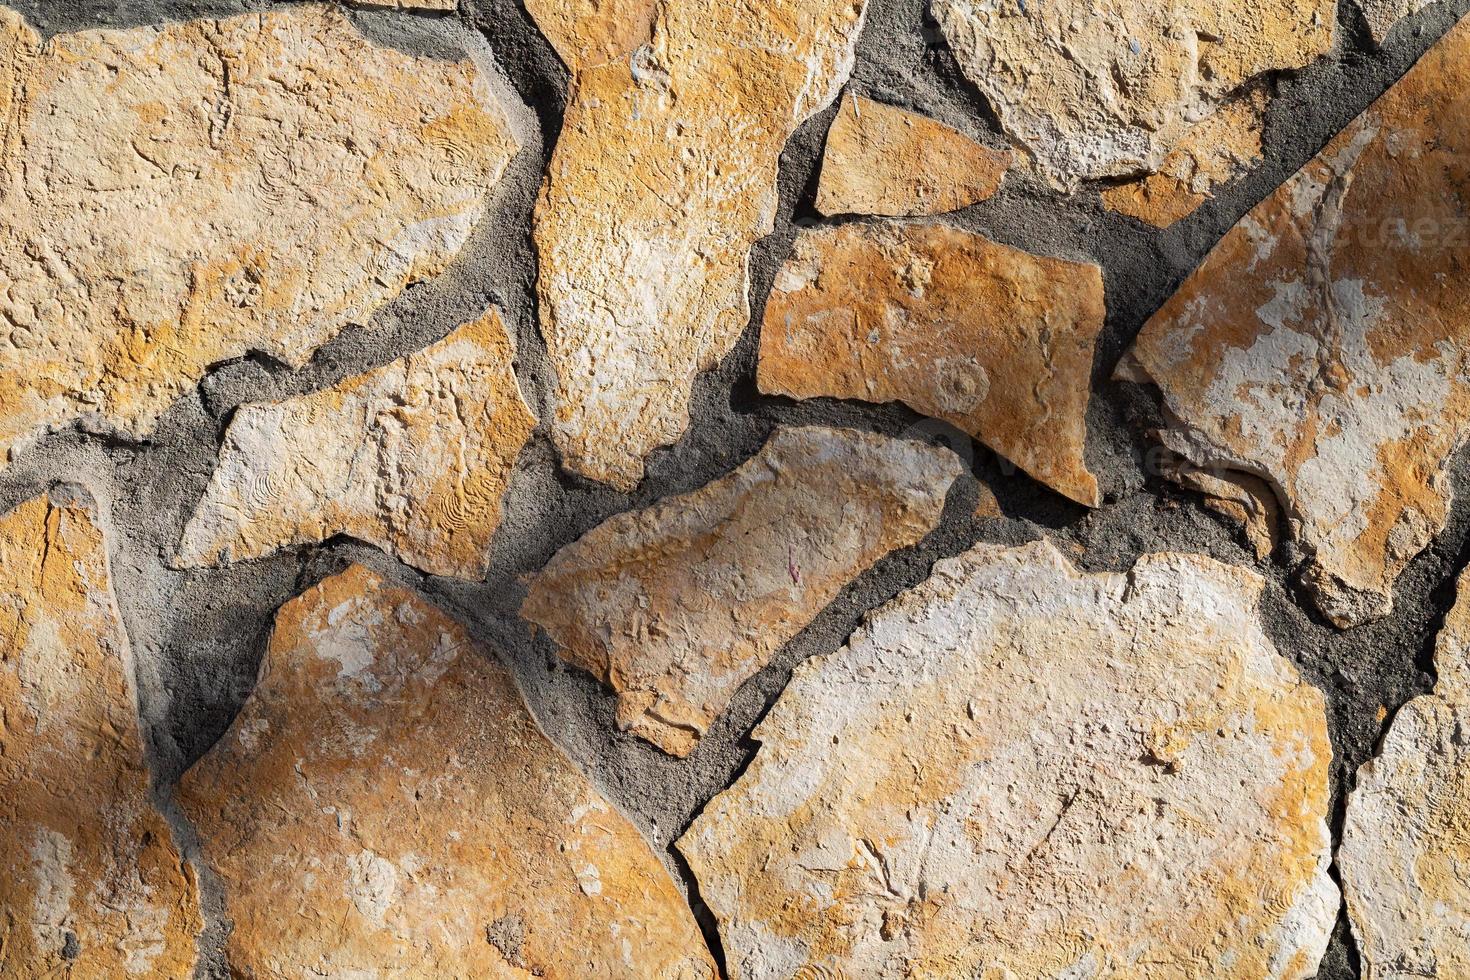 Stein abstrakte Textur. Oberfläche Grunge-Hintergrund. schmutziges Effektmuster. materiellen Hintergrund. foto